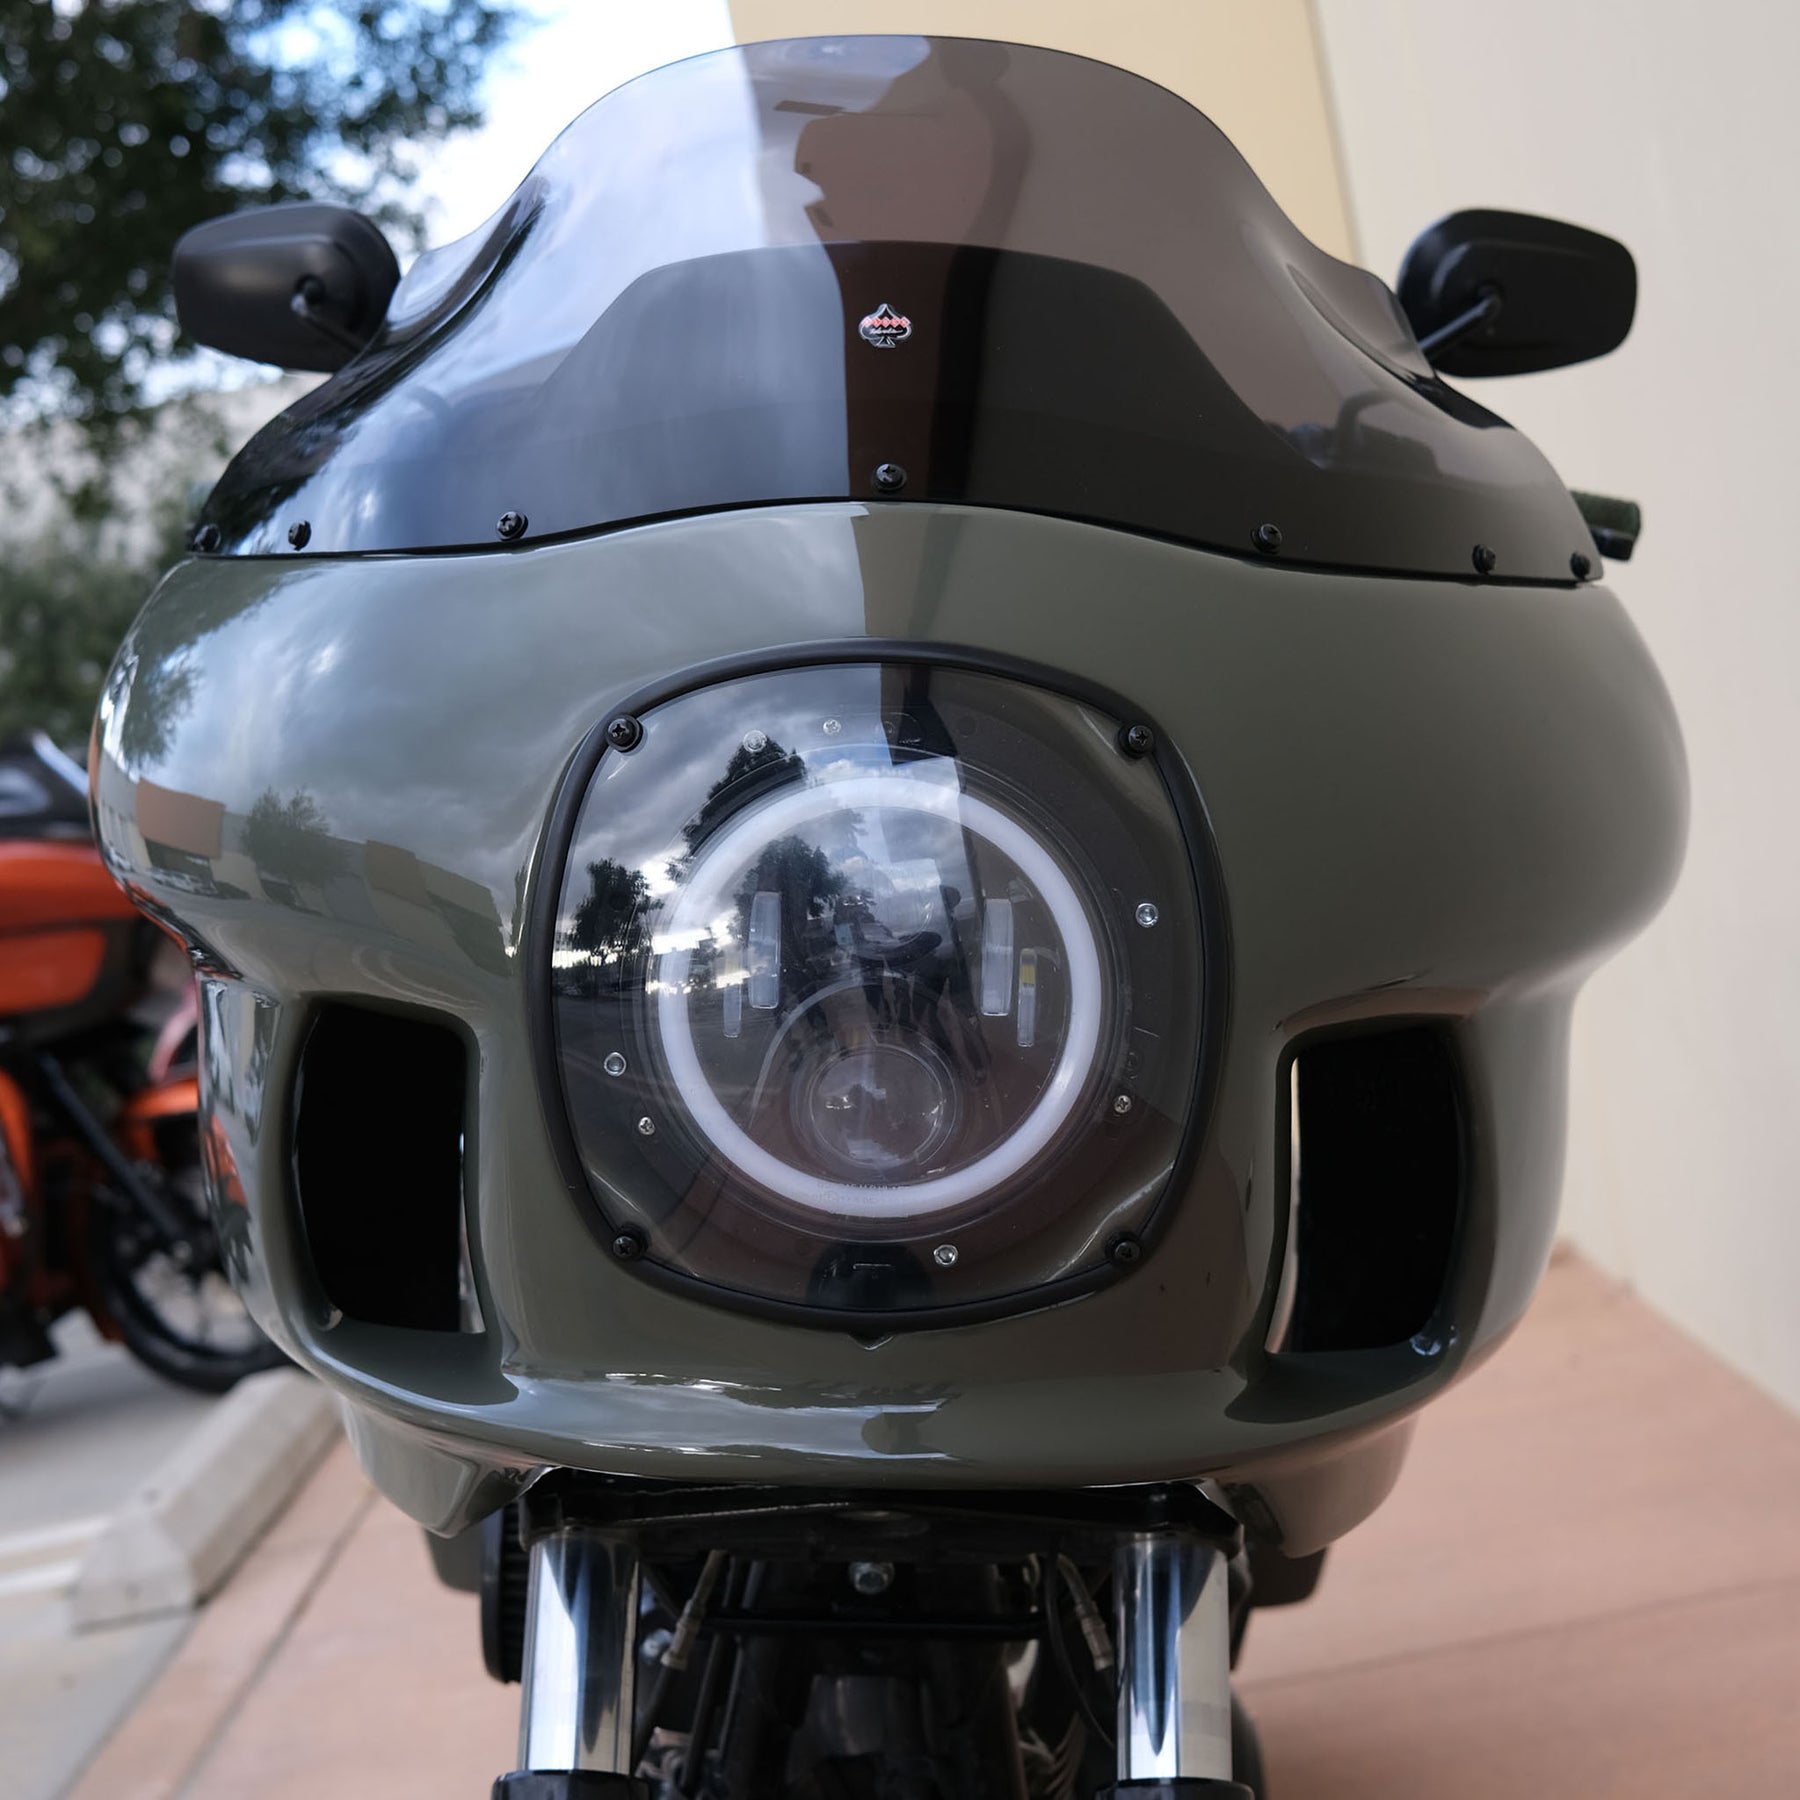 Fairing Headlight Cover for FXRP/FXRT/FXRD Motorcycles